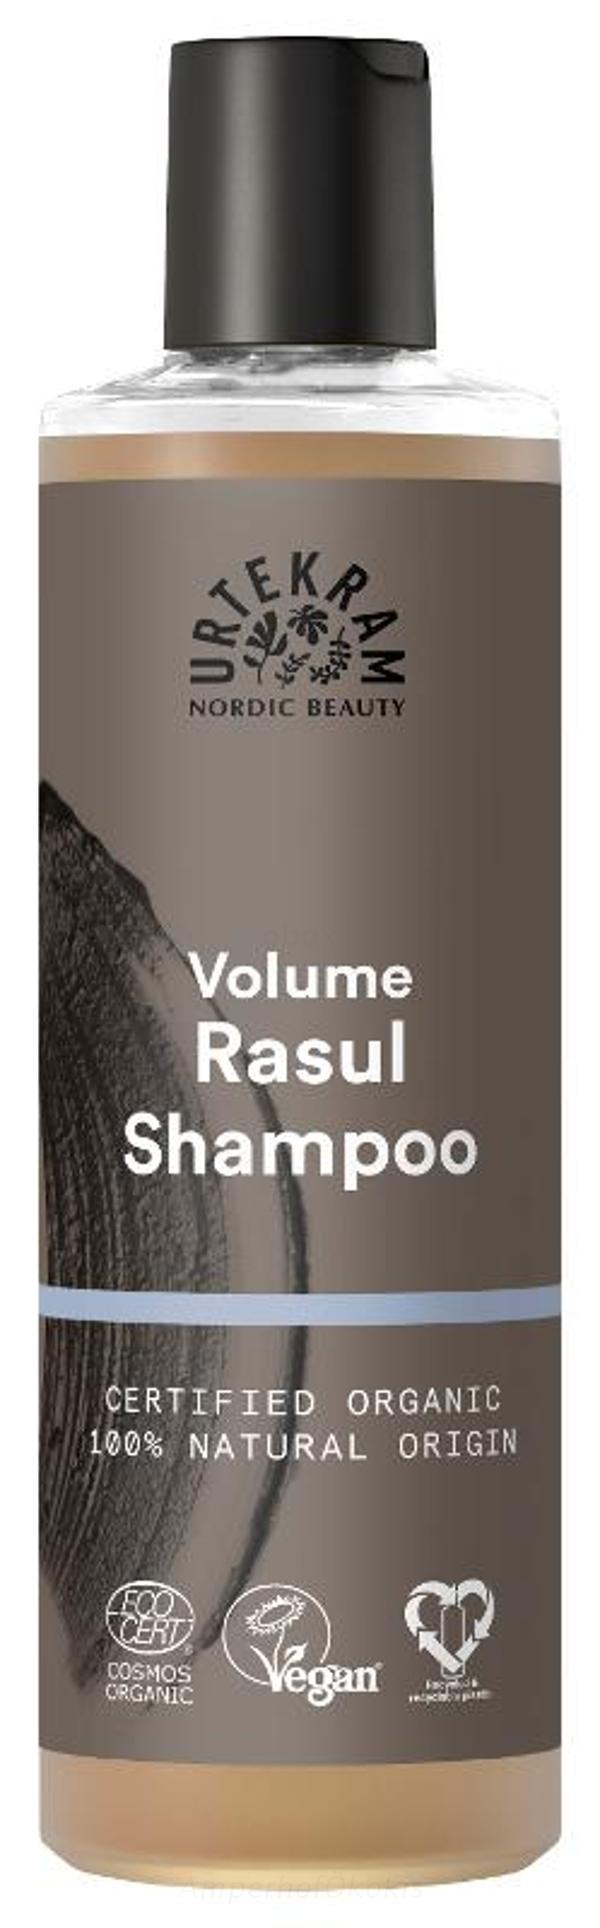 Produktfoto zu Shampoo Rasul 250 ml